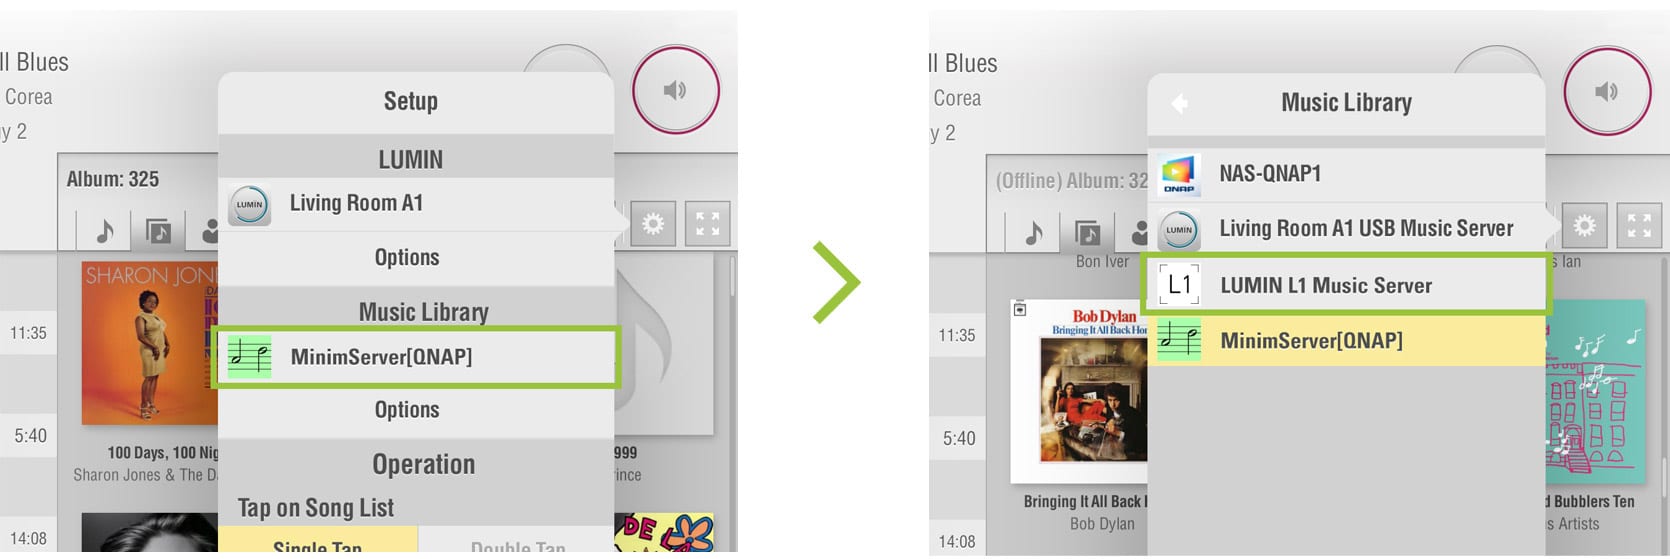 Lumin iOS App Benutzeranleitung 10.1 Lumin L1 Musikserver Scan für neue Musikdateien